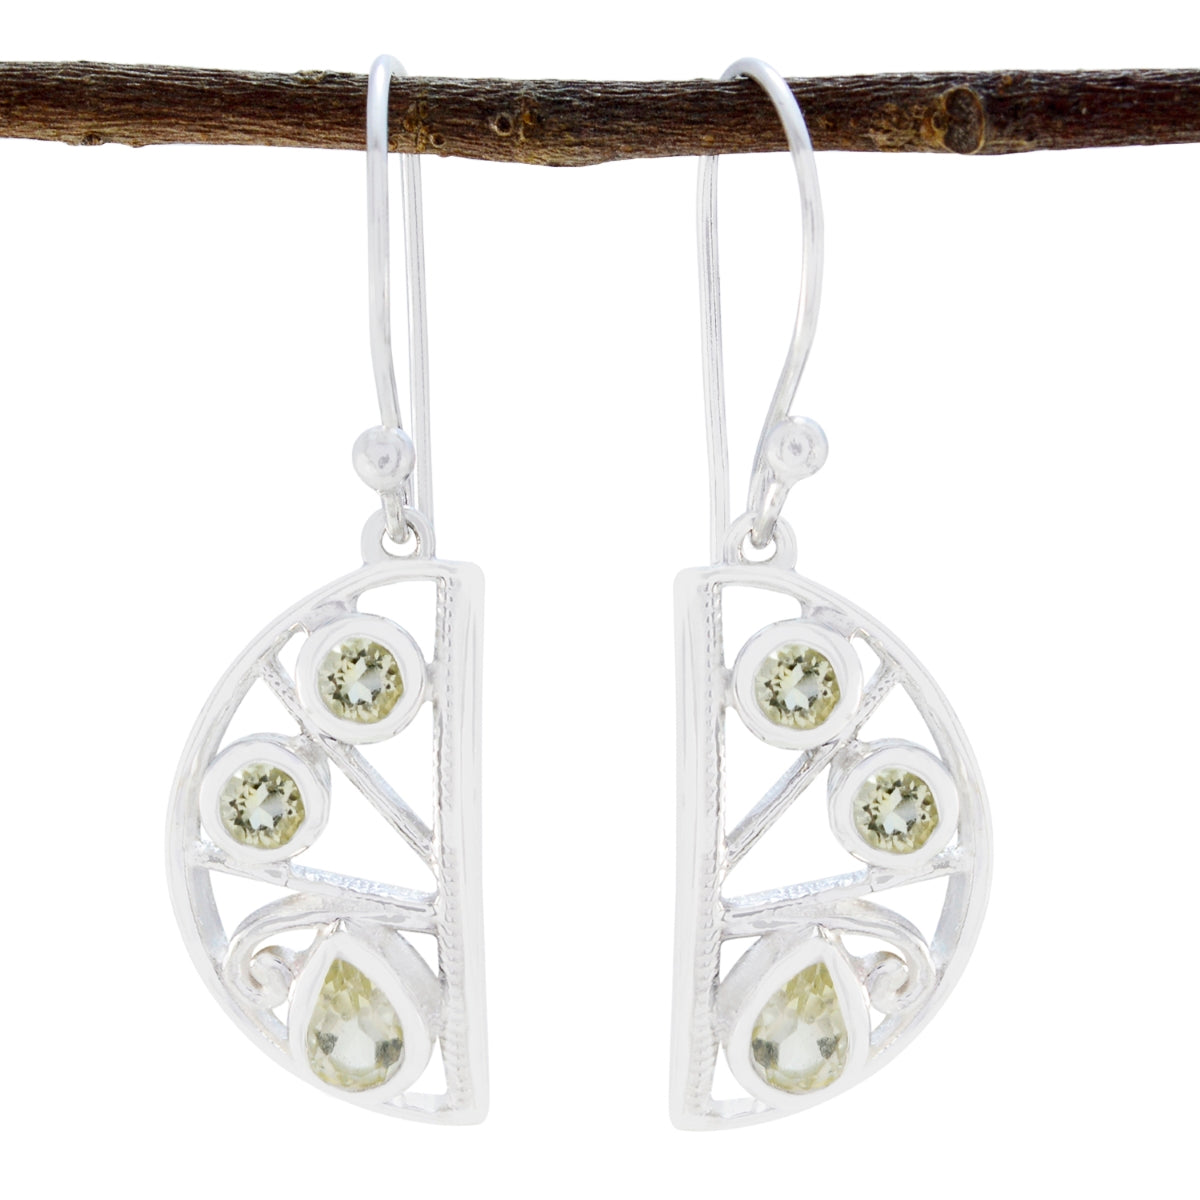 Riyo Genuine Gems multi shape Faceted Yellow Lemon Quartz Silver Earrings gift for grandmother